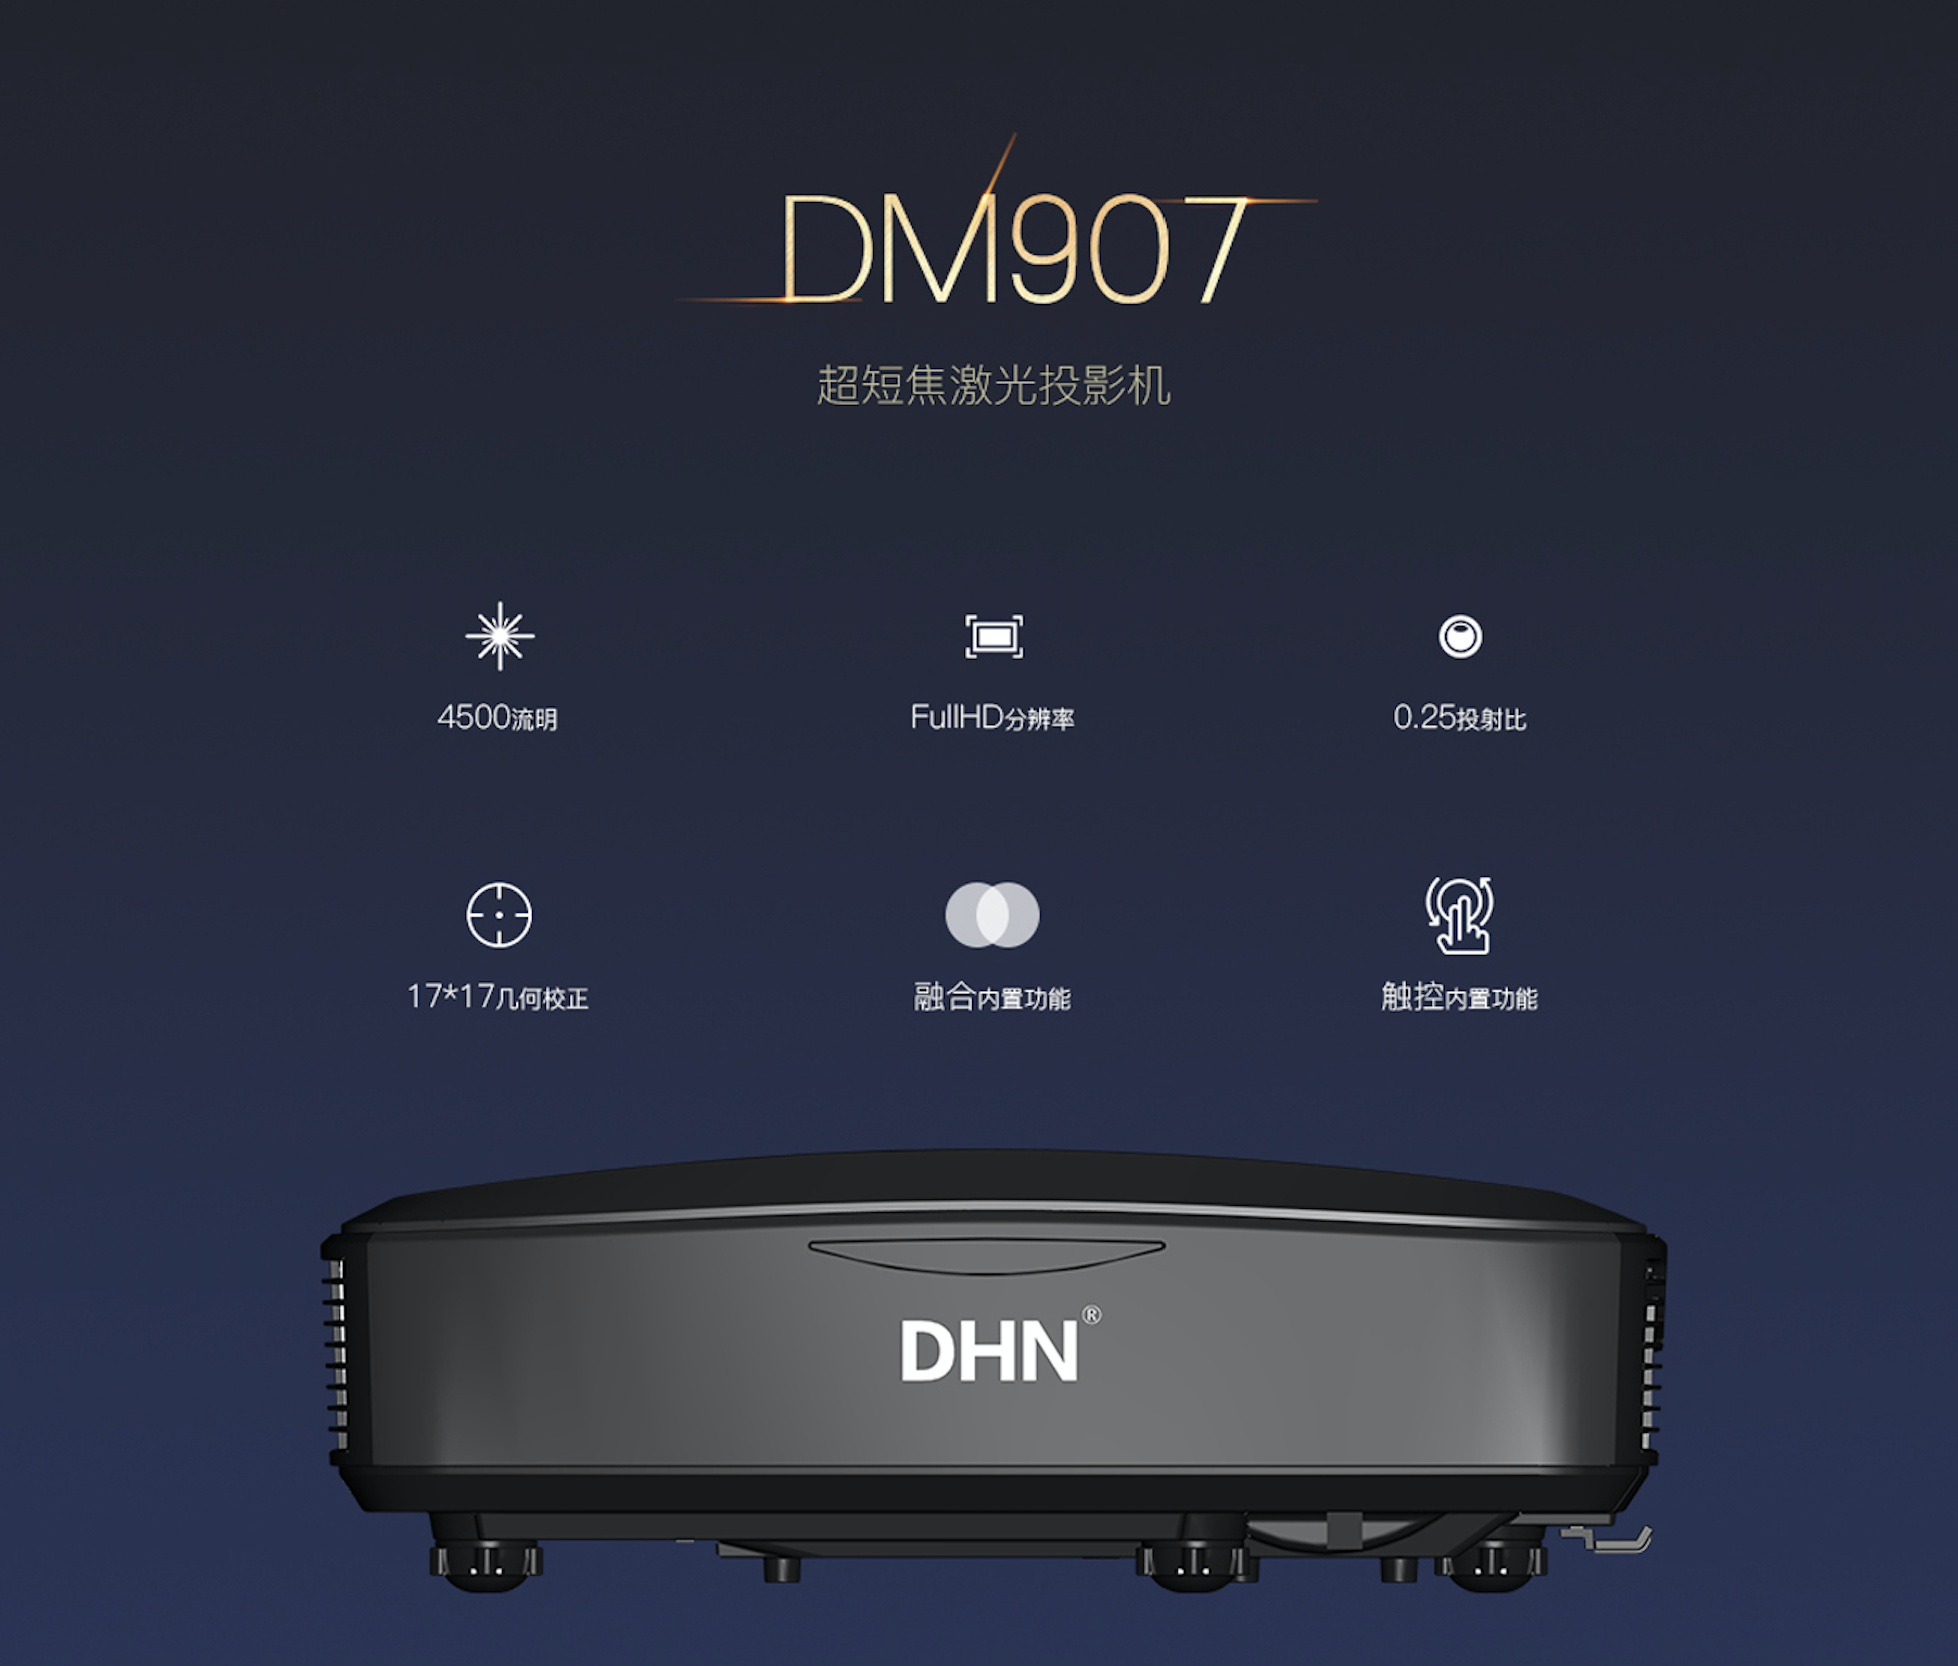 迪恒DHN超短焦激光投影机 DM907